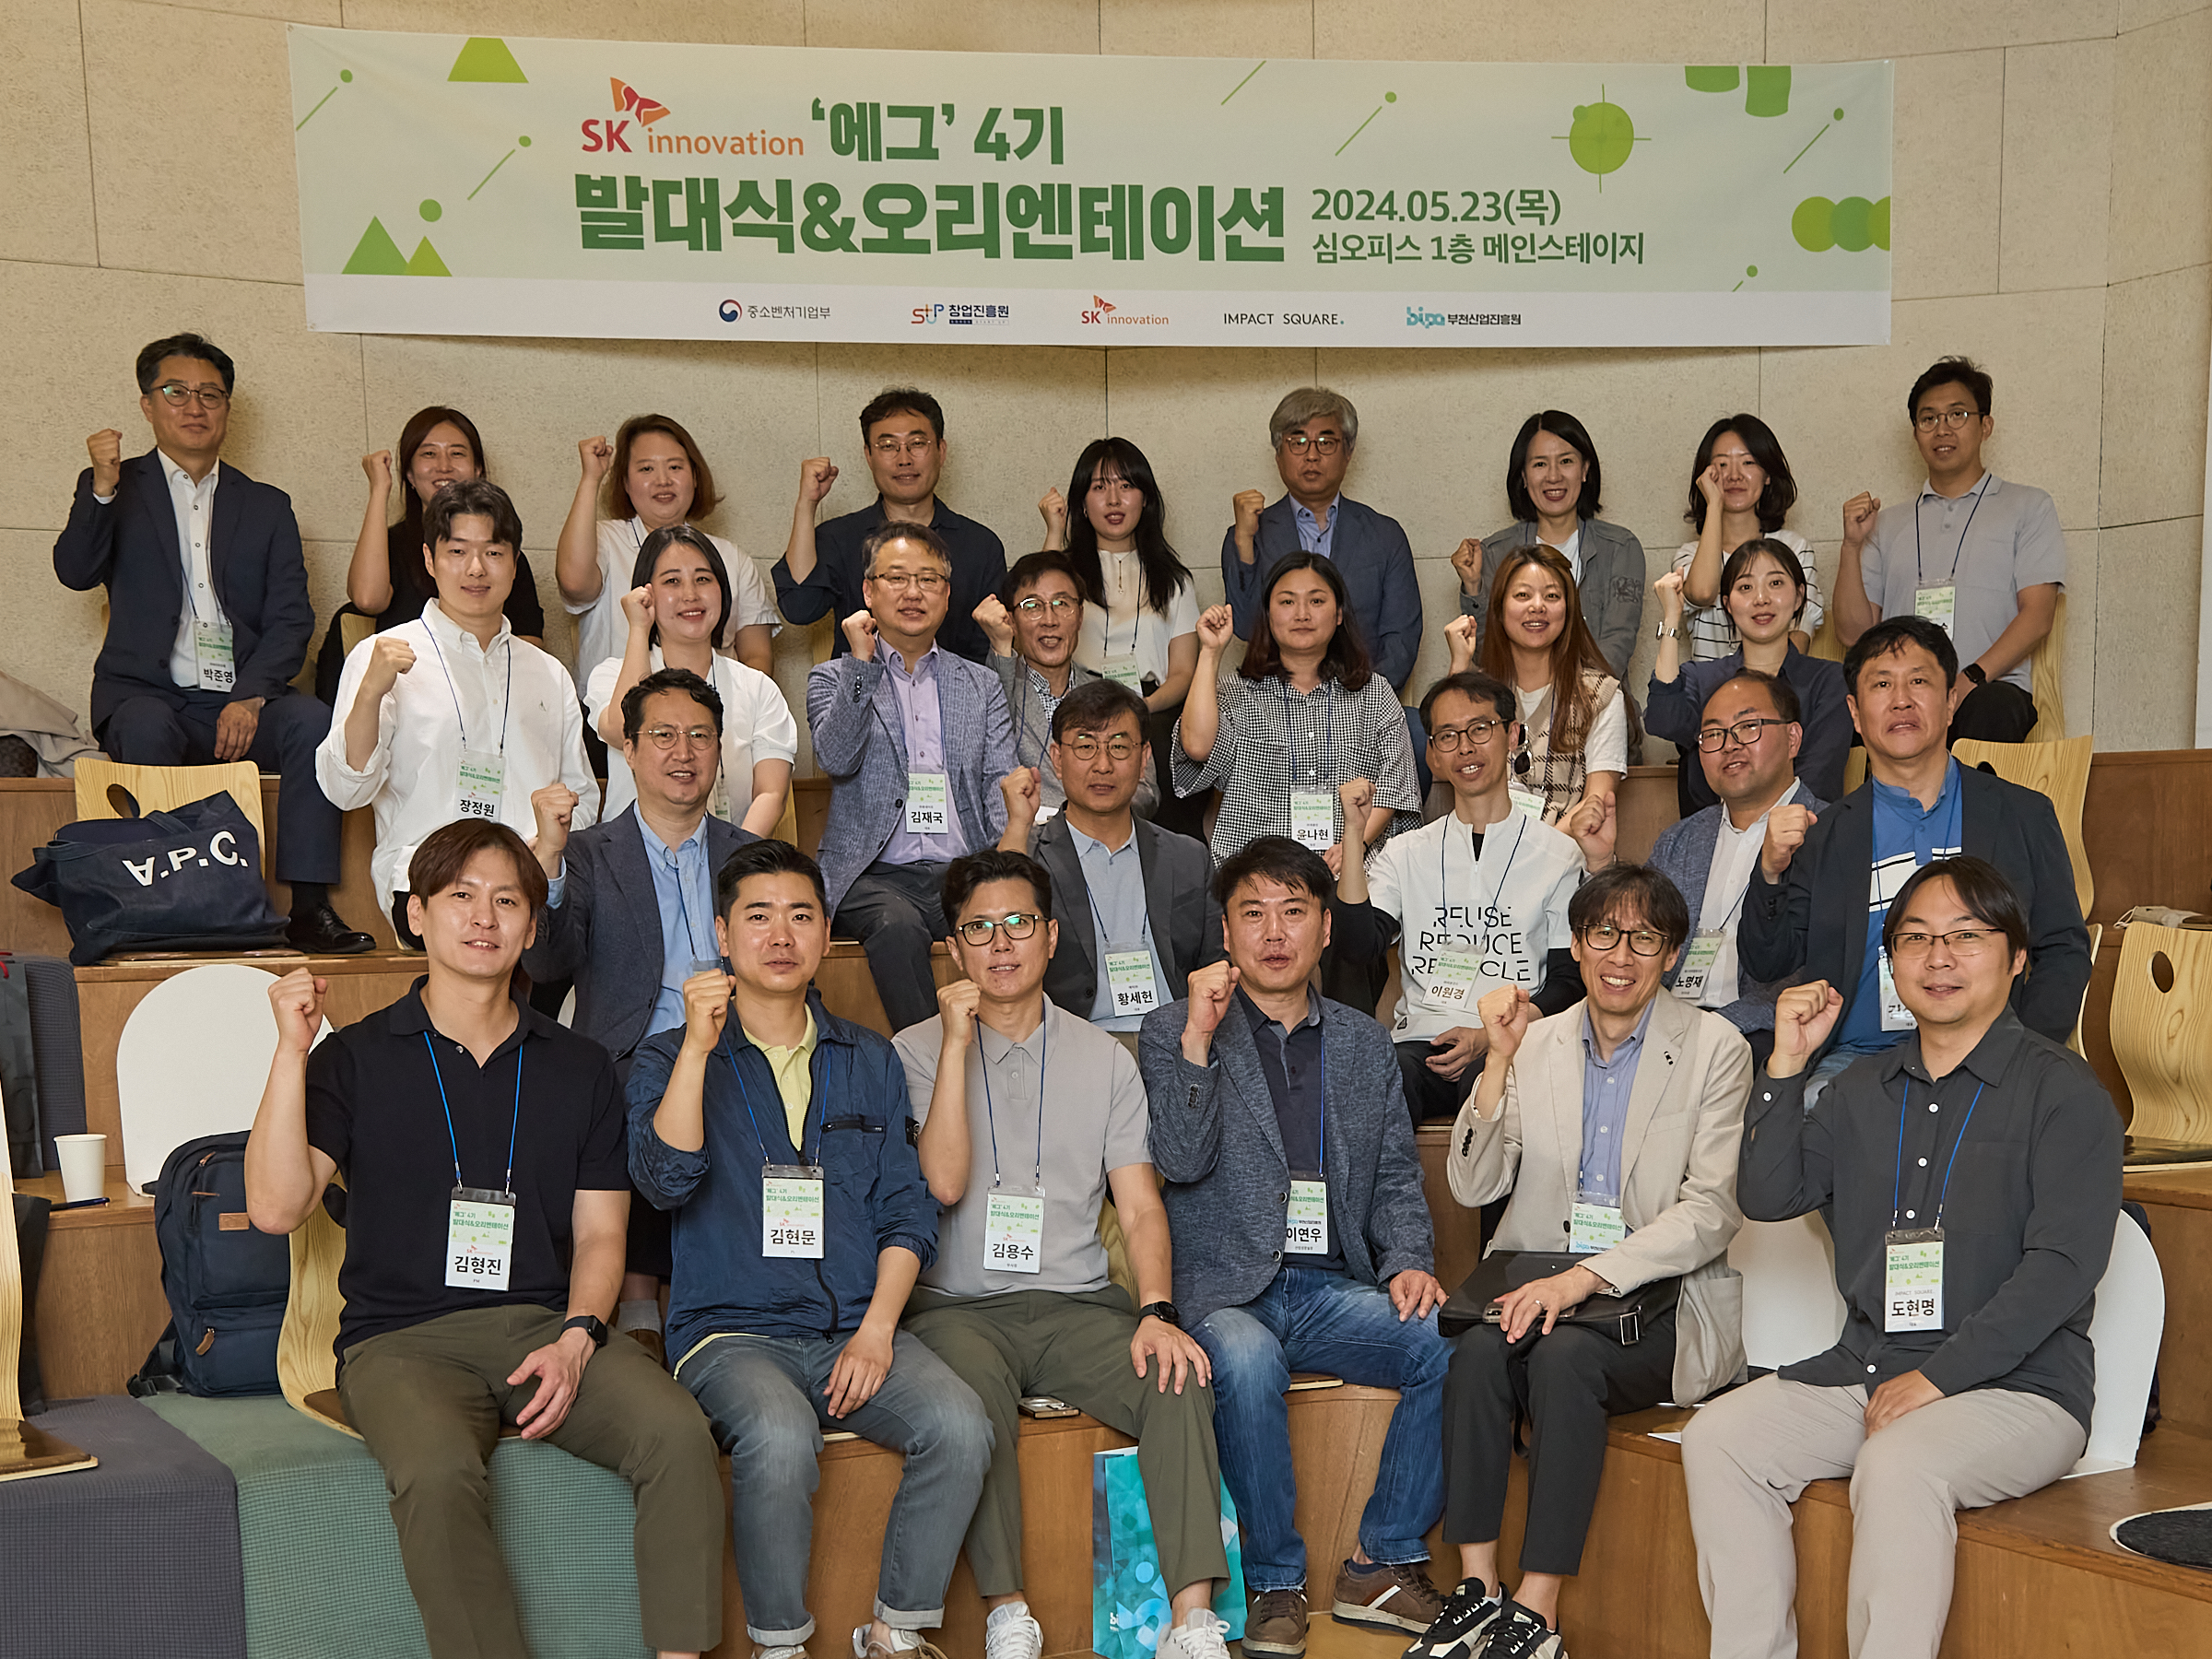 에그 4기에 선발된 15개 스타트업 대표와 관계자들이 23일 서울 성동구 심오피스에서 열린 발대식에서 기념사진을 촬영하고 있다.